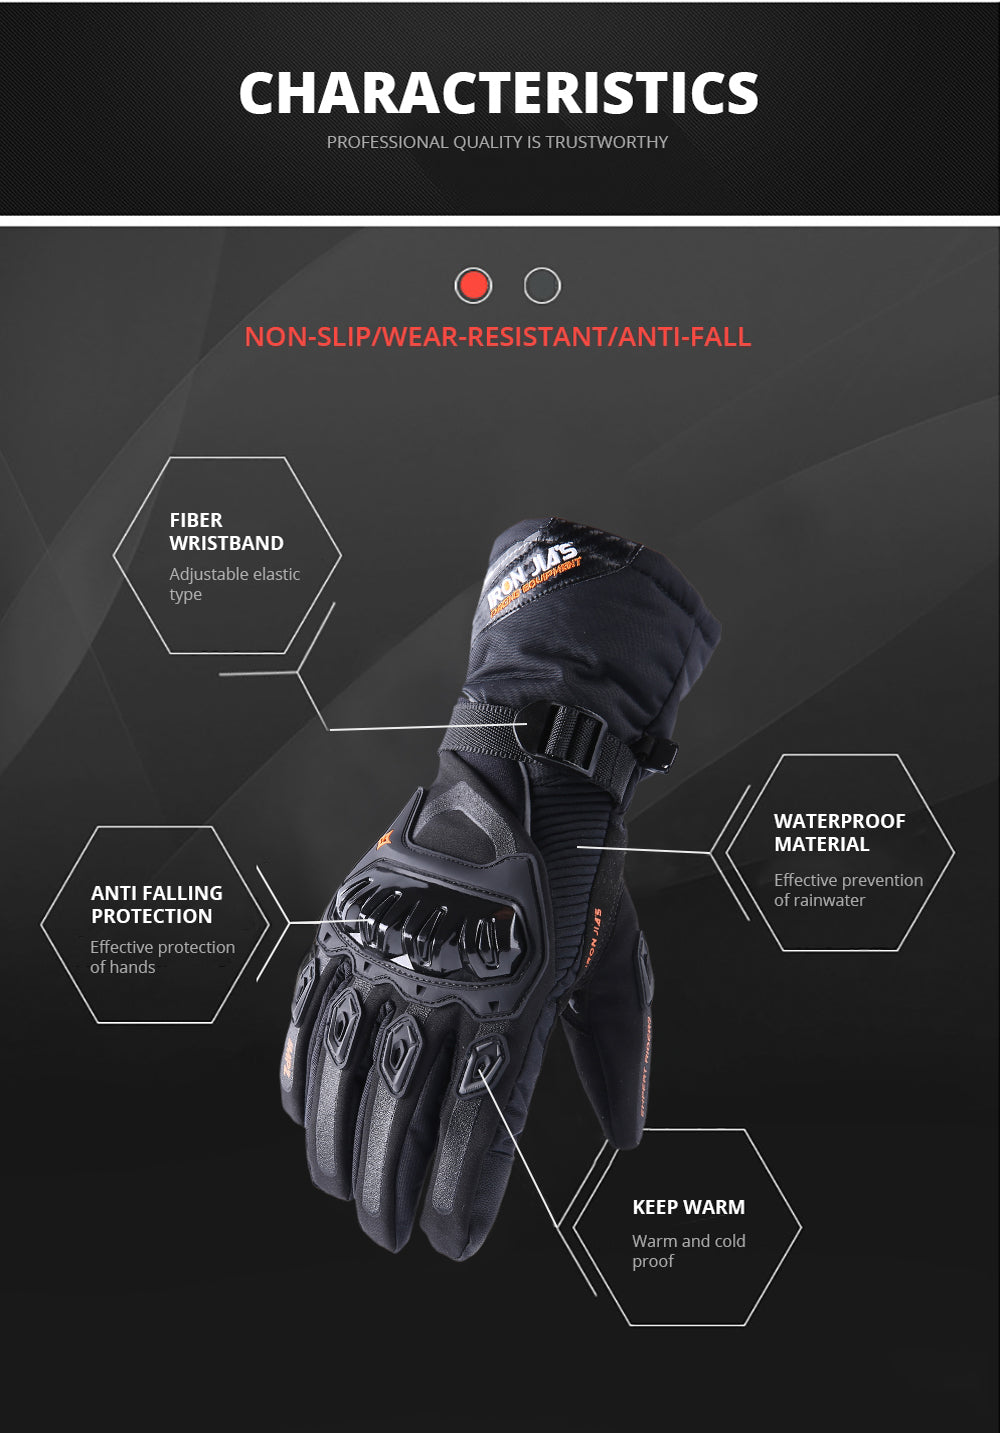 IRON JIA Winter Motorrad-Handschuhe wasserdicht winddicht Touch-Screen-Moto-Schutzausrüstung Motocross Motorrad Reithandschuhe